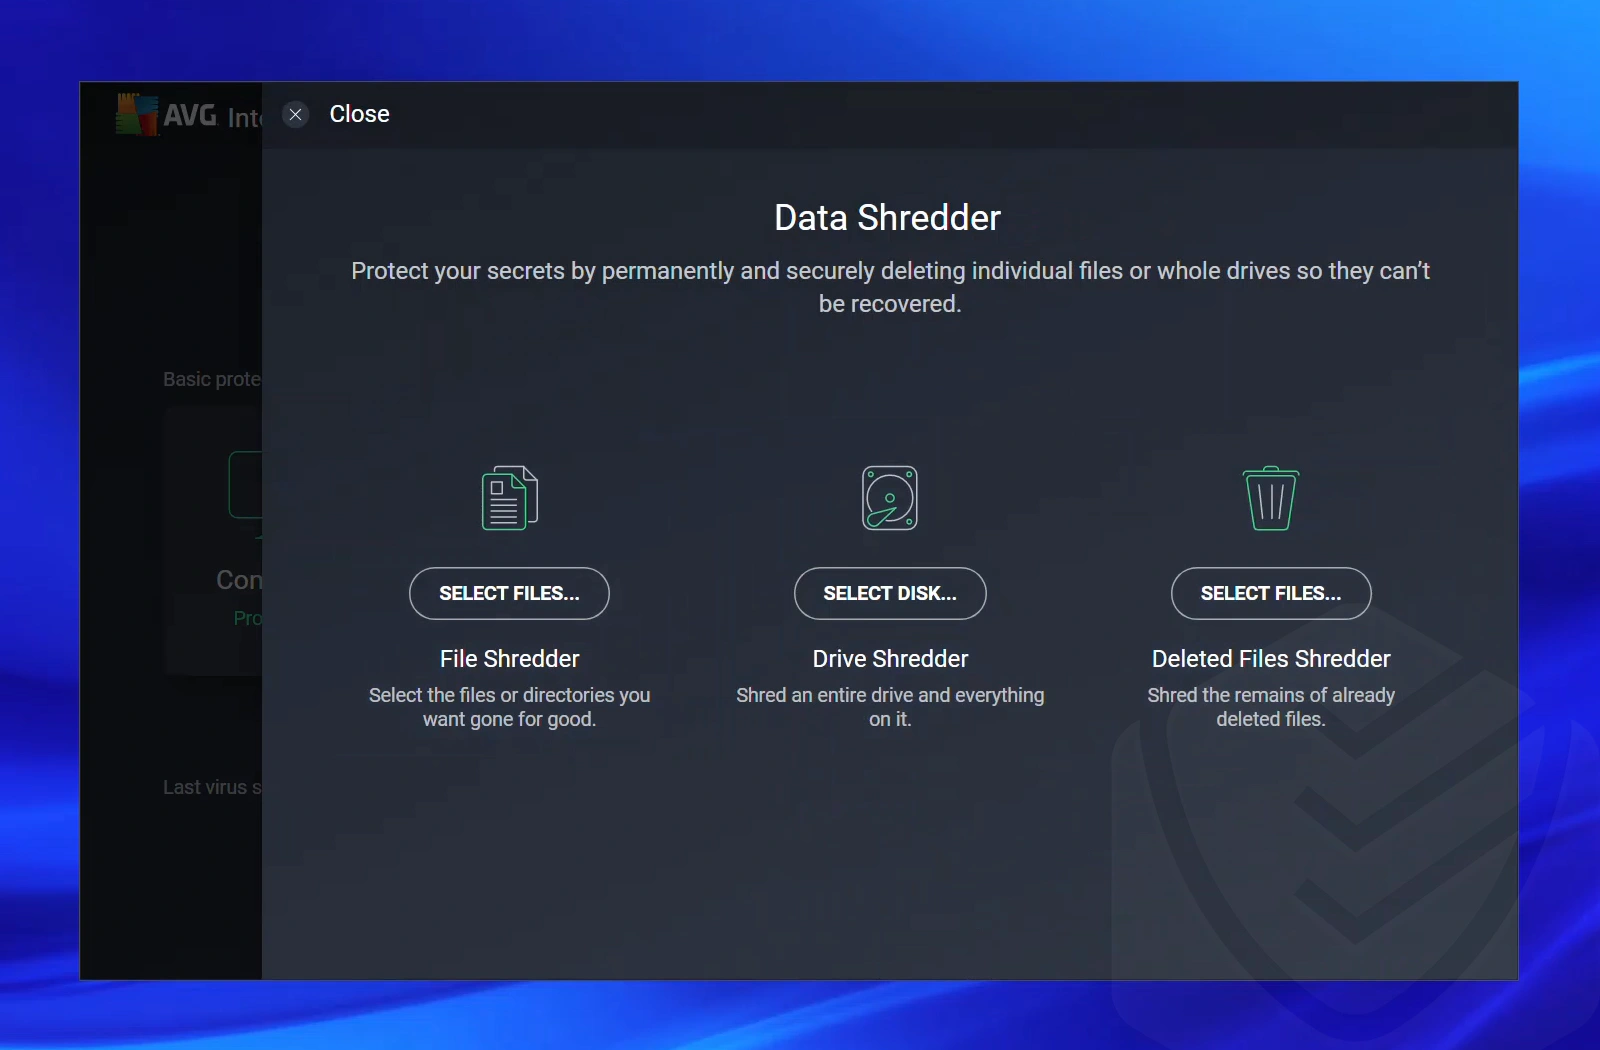 Data Shredder interface